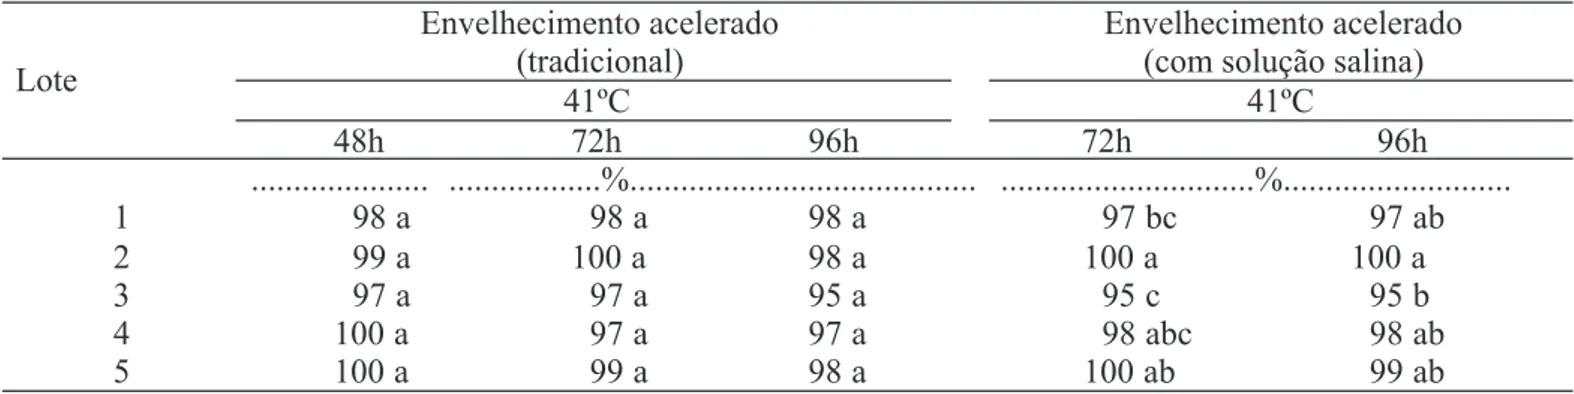 TABELA 3.  Porcentagens de plântulas normais obtidas no teste de envelhecimento acelerado (procedimento tradicional e com solução salina) de sementes de cinco lotes de pepino, híbrido Safira.